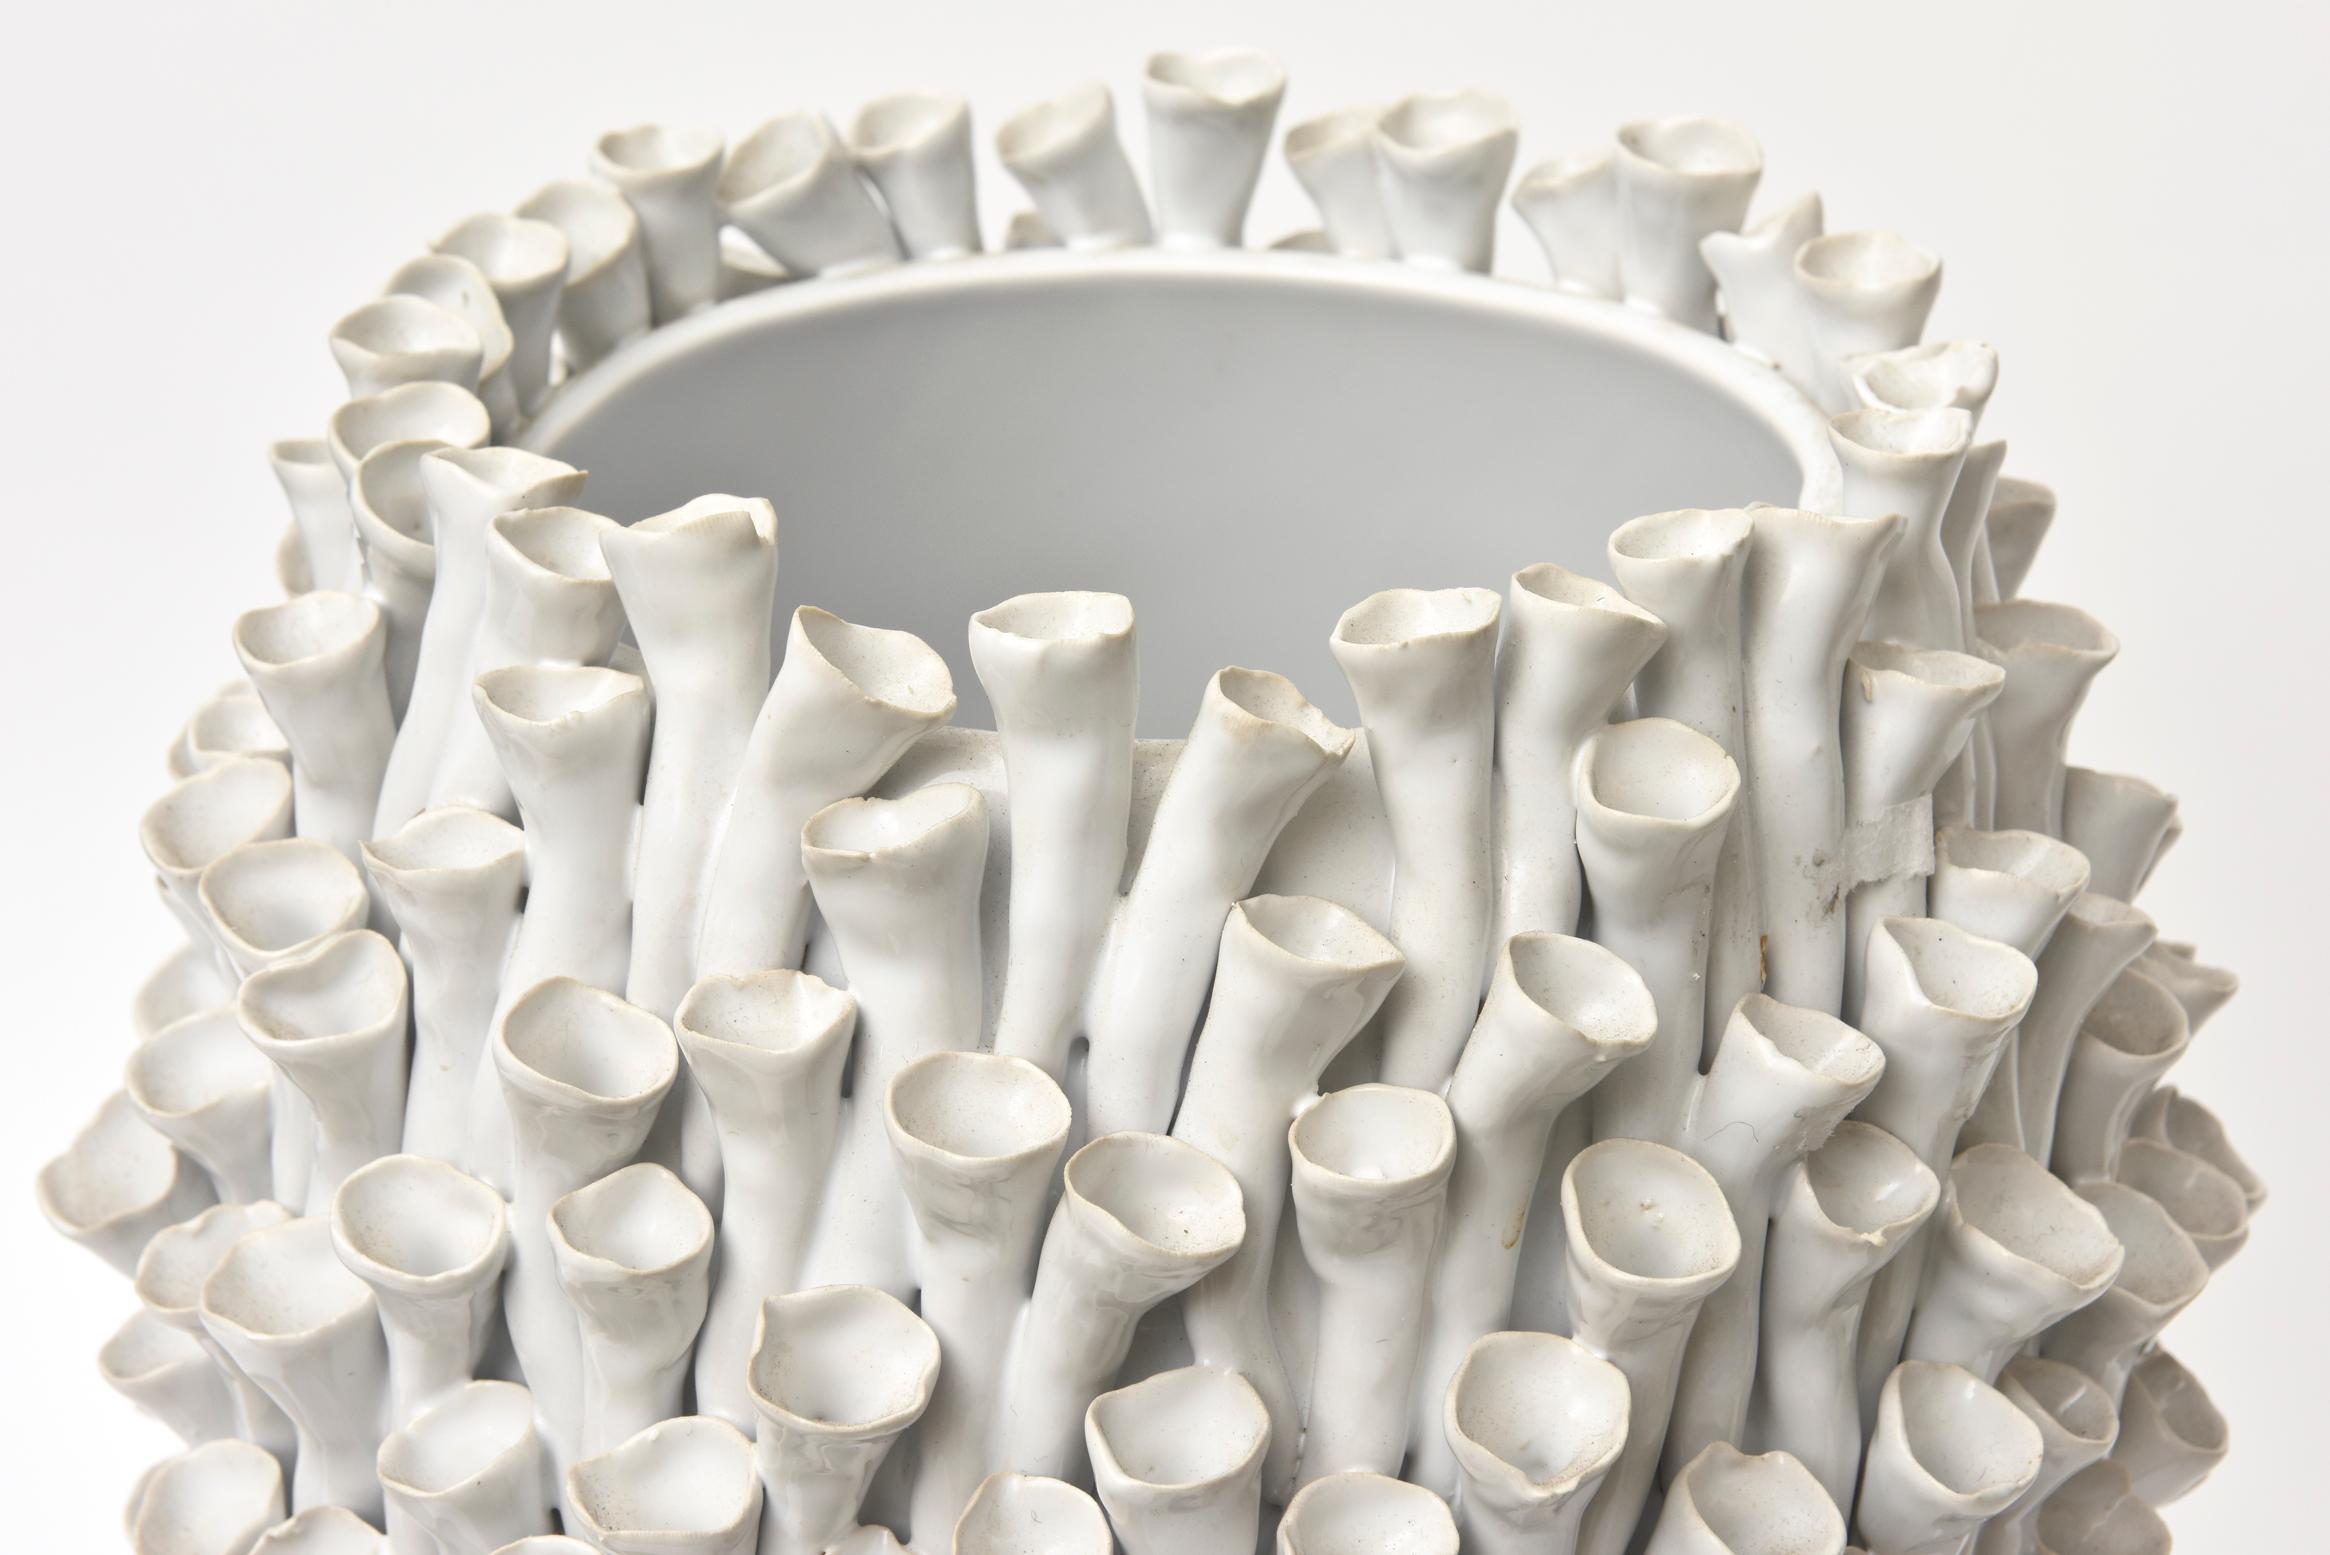 Unknown Organic Modern Sculptural White Ceramic Sculpture/ Vase/ Vessel